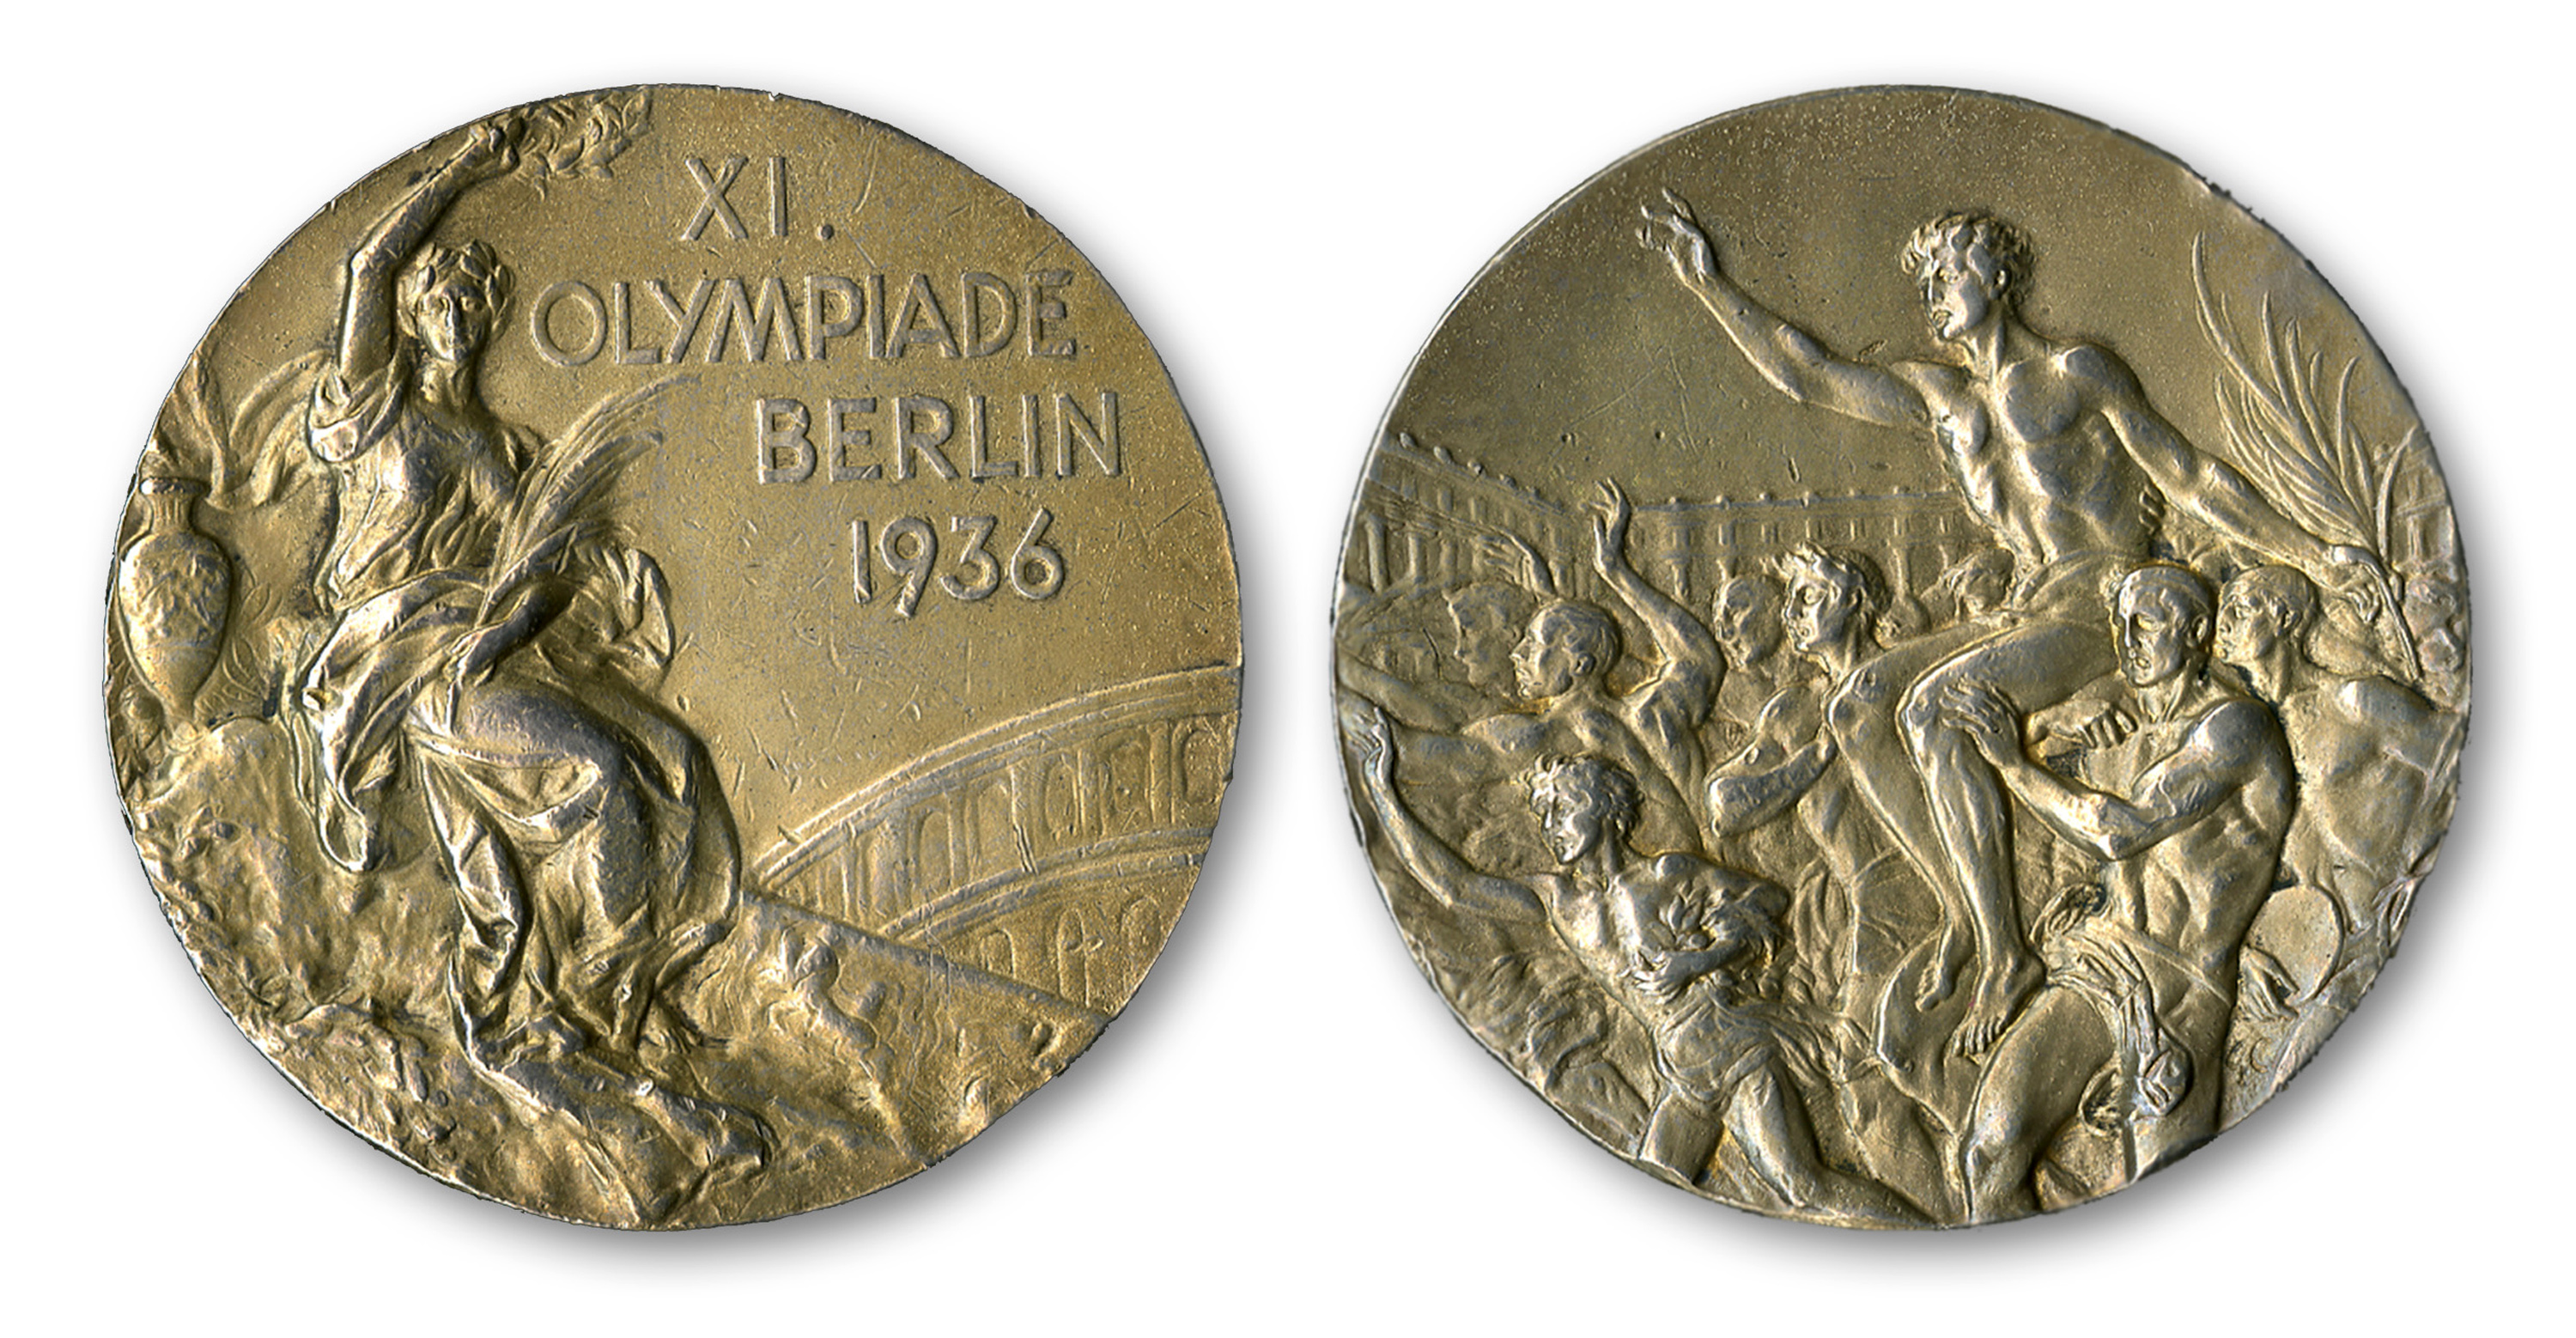 Первую золотую медаль на олимпийских играх. Джесси Оуэнс. Олимпийские медали Берлин 1936. Золотая Олимпийская медаль 1936.